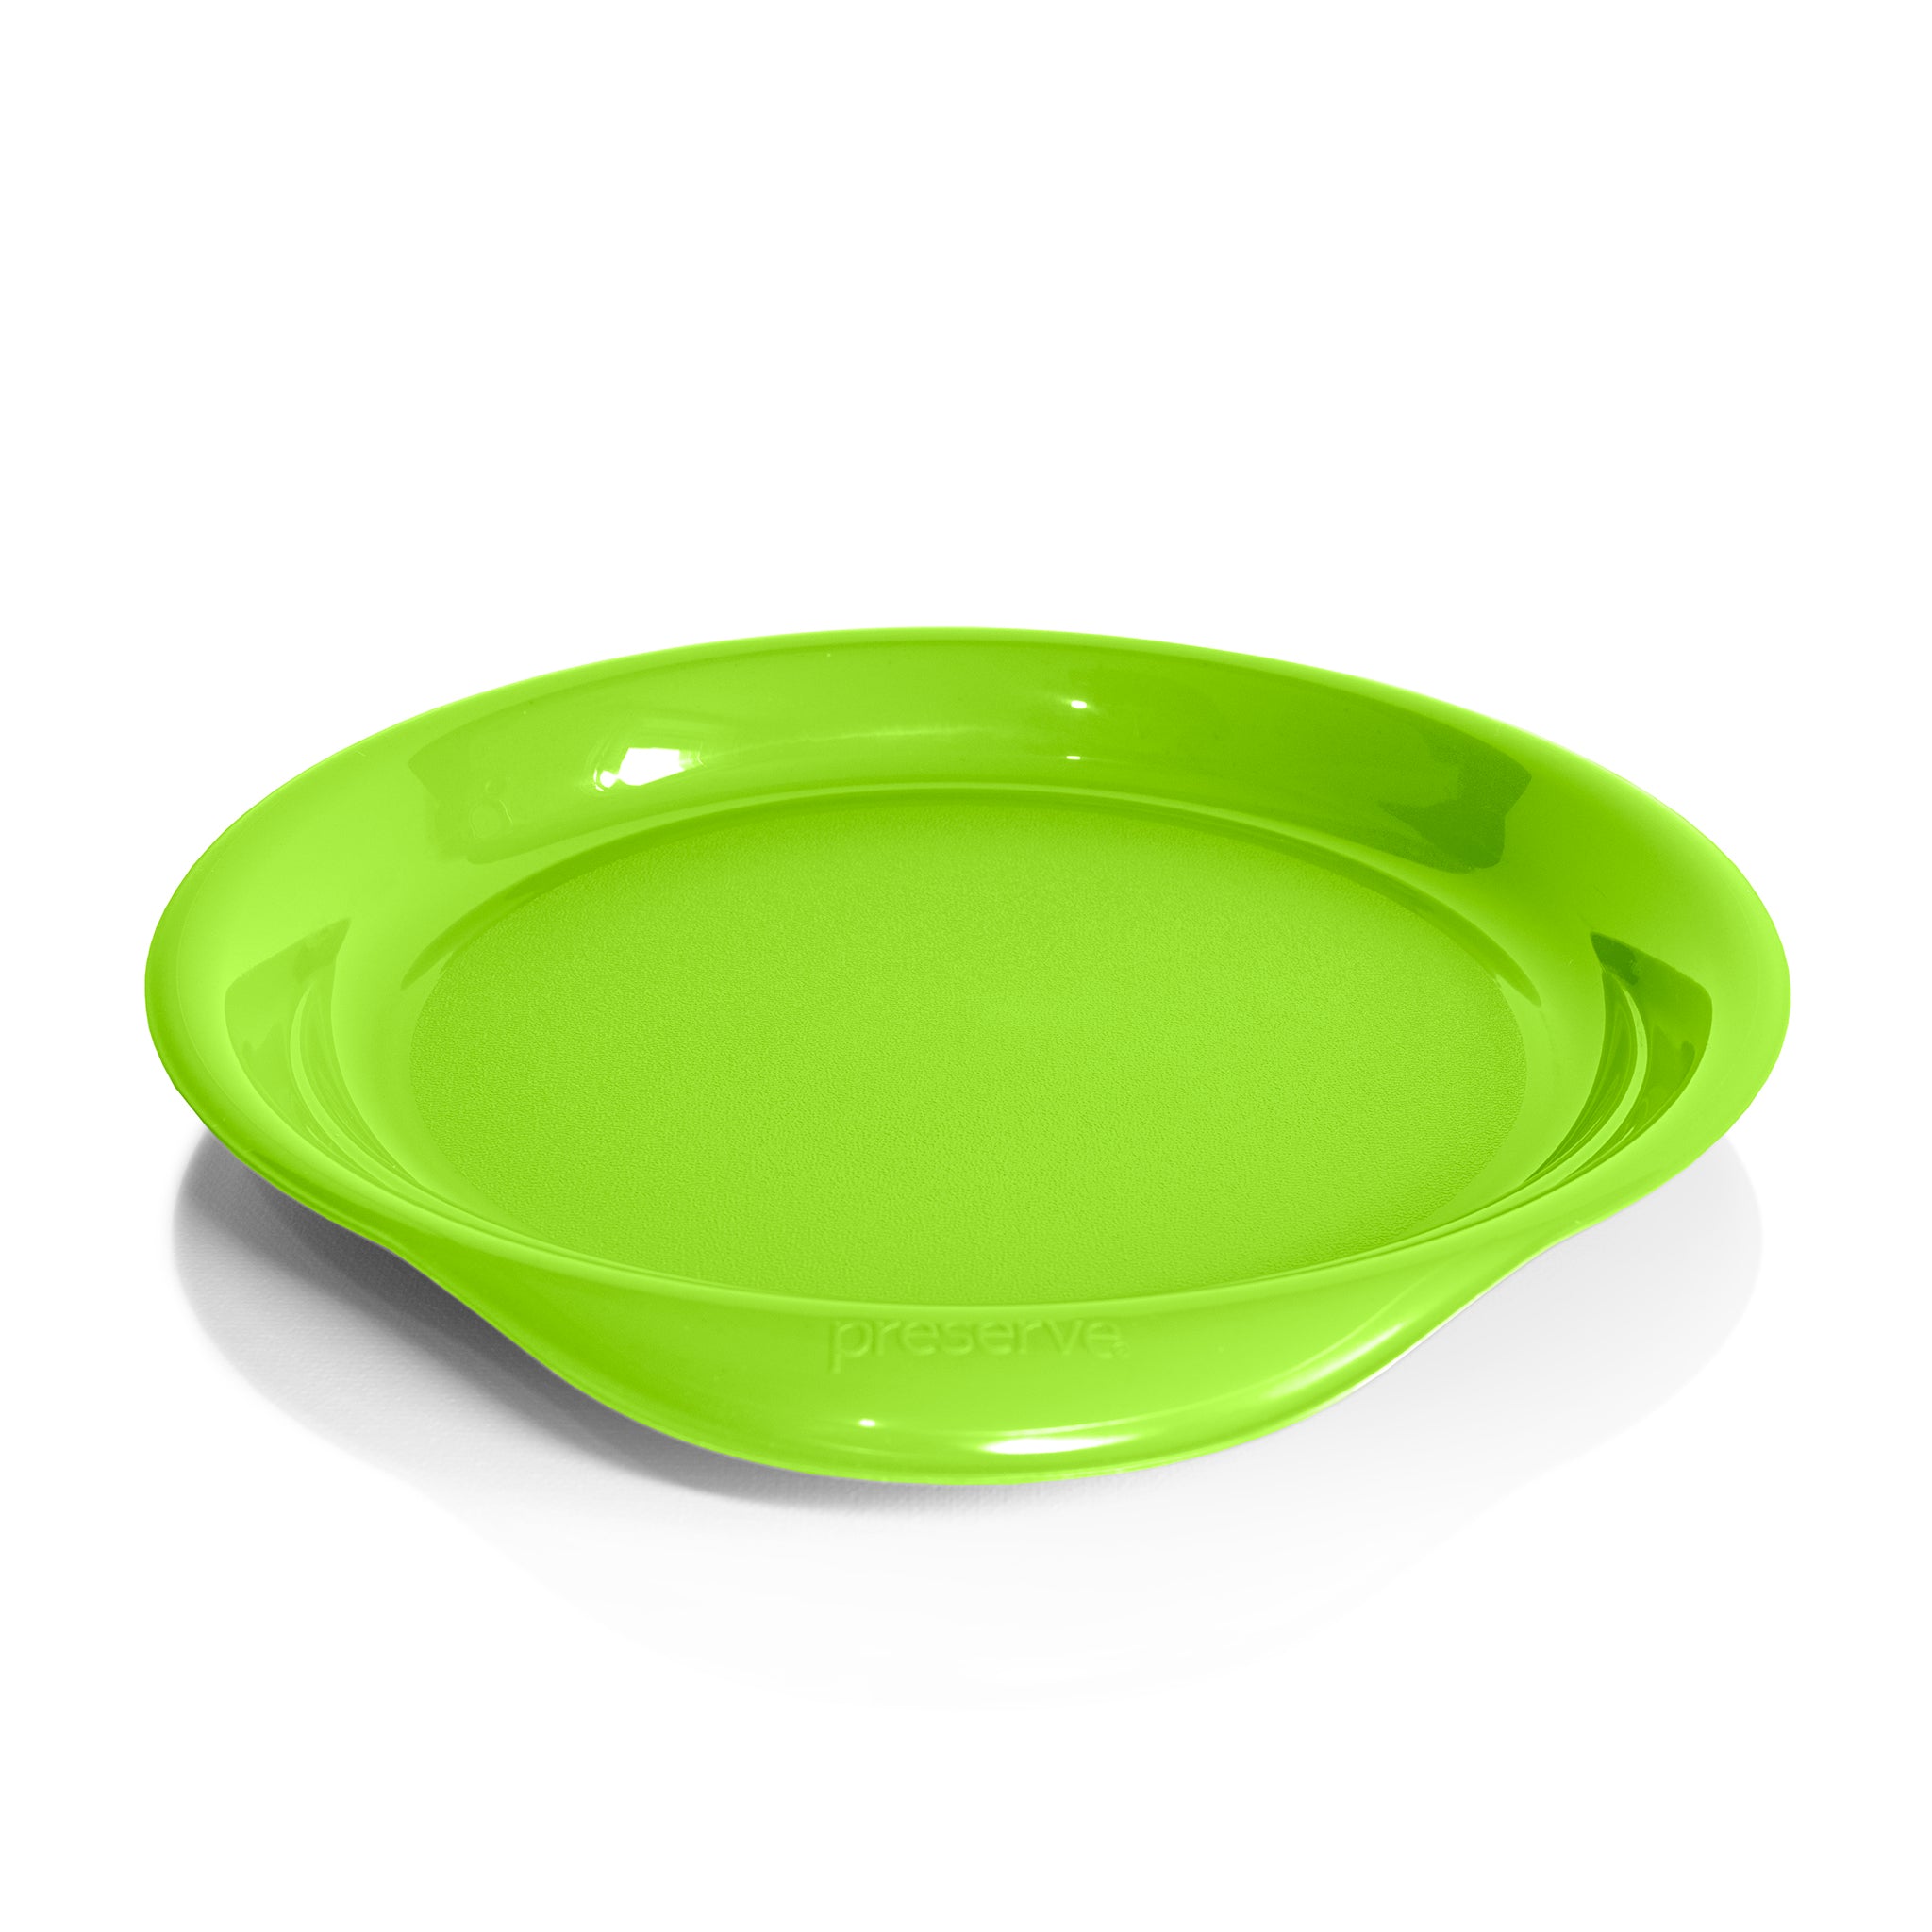 Reusable plastic dinner plate in green